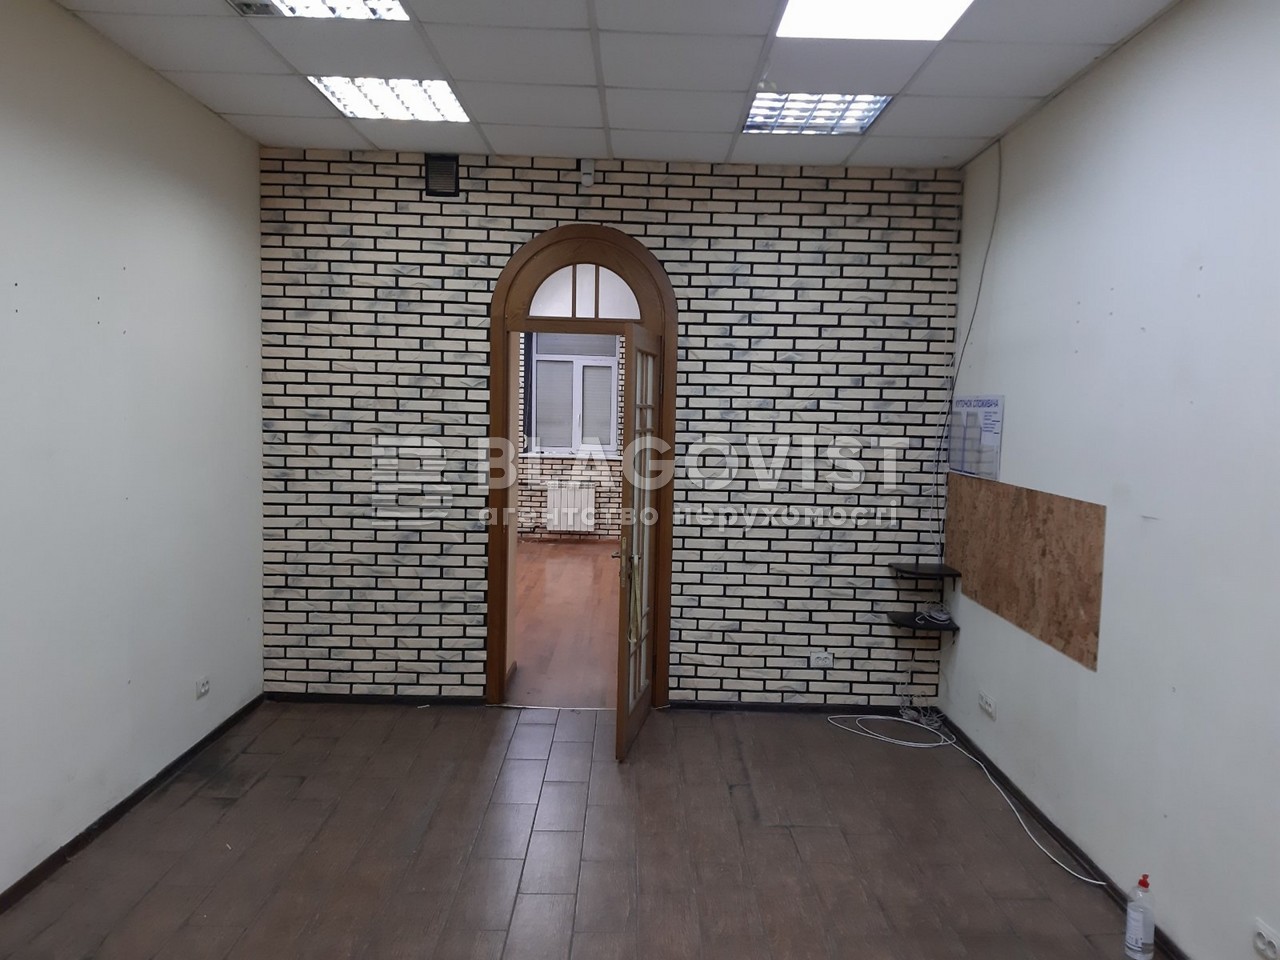  Нежилое помещение, R-41152, Межигорская, Киев - Фото 6